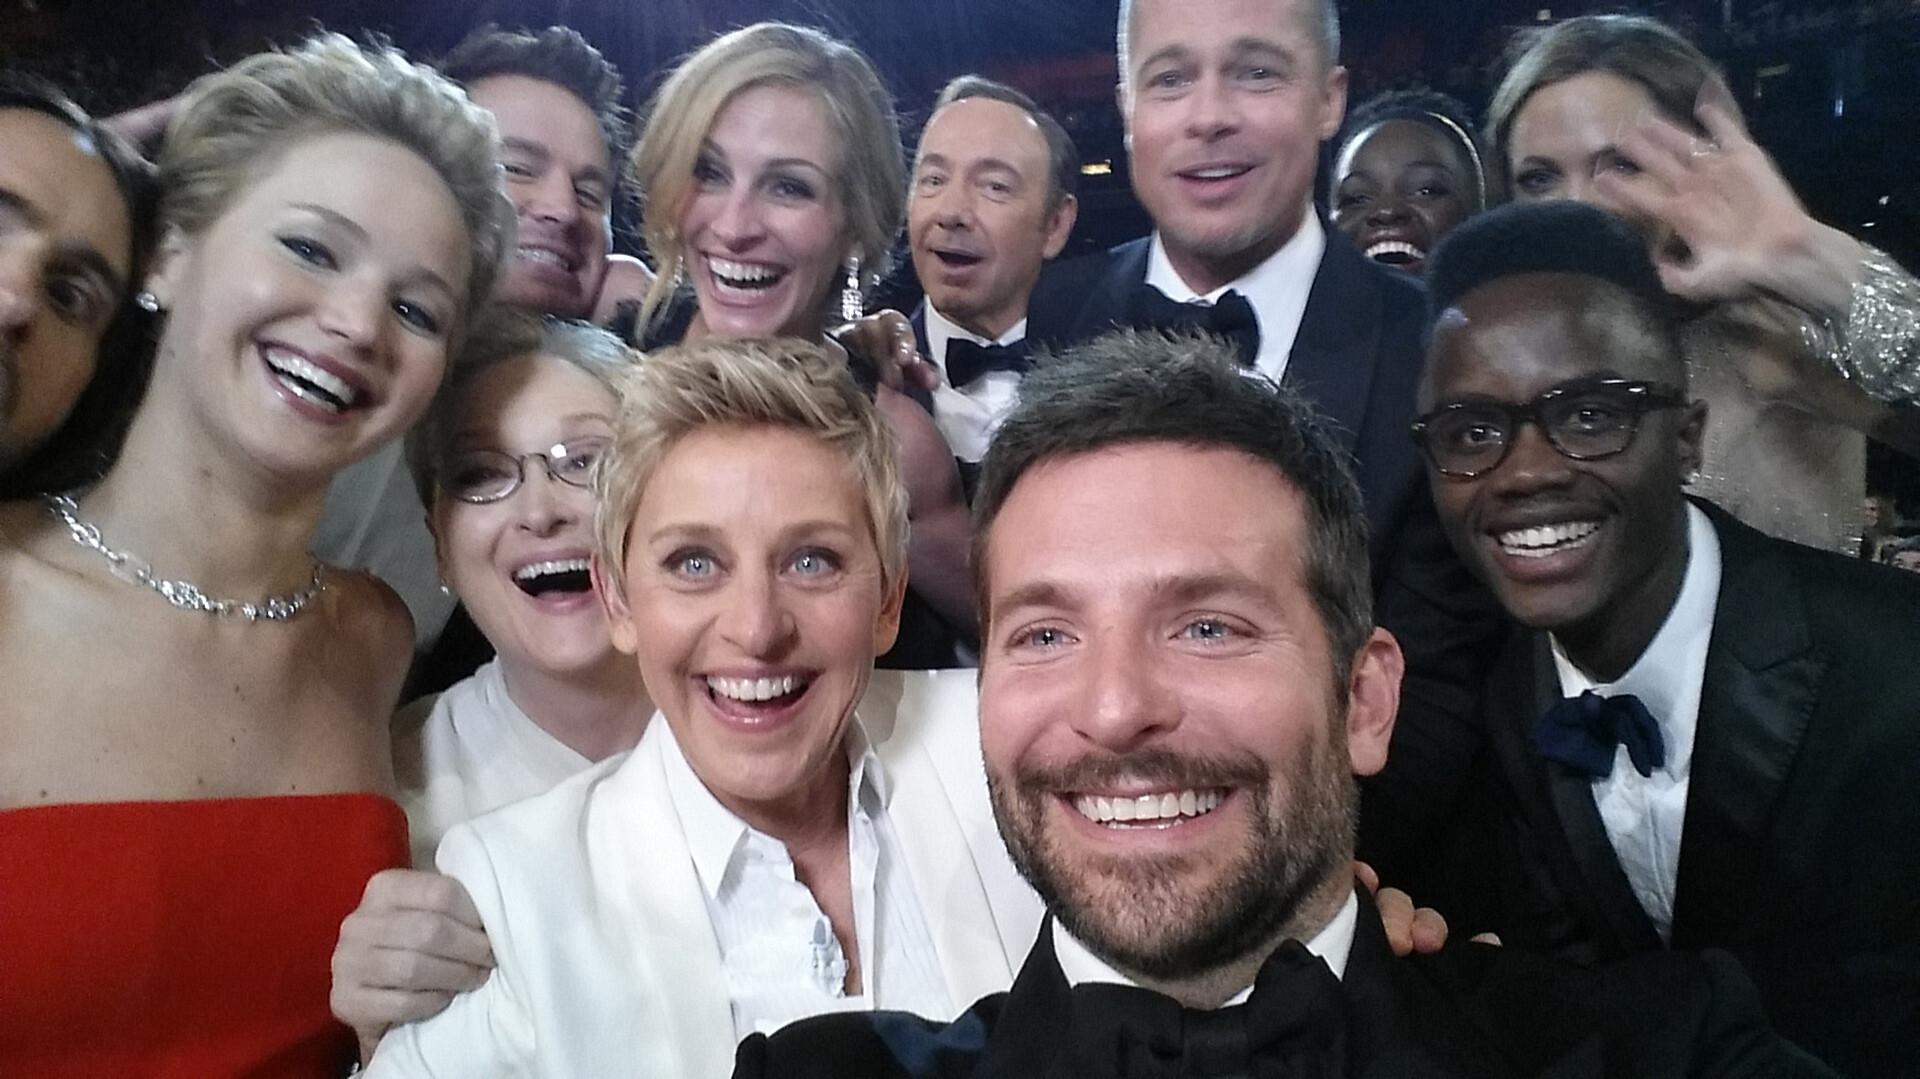  Zdjęcie typu selfie wykonane na gali rozdania Oscarów wykonane przez aktora Bradleya Coopera. Poza Cooperem na zdjęciu znajduje dużo znanych uśmiechniętych osób, między innymi Meryl Streep, Brad Pitt, Jennifer Lawrence, Ellen Degeneres. 